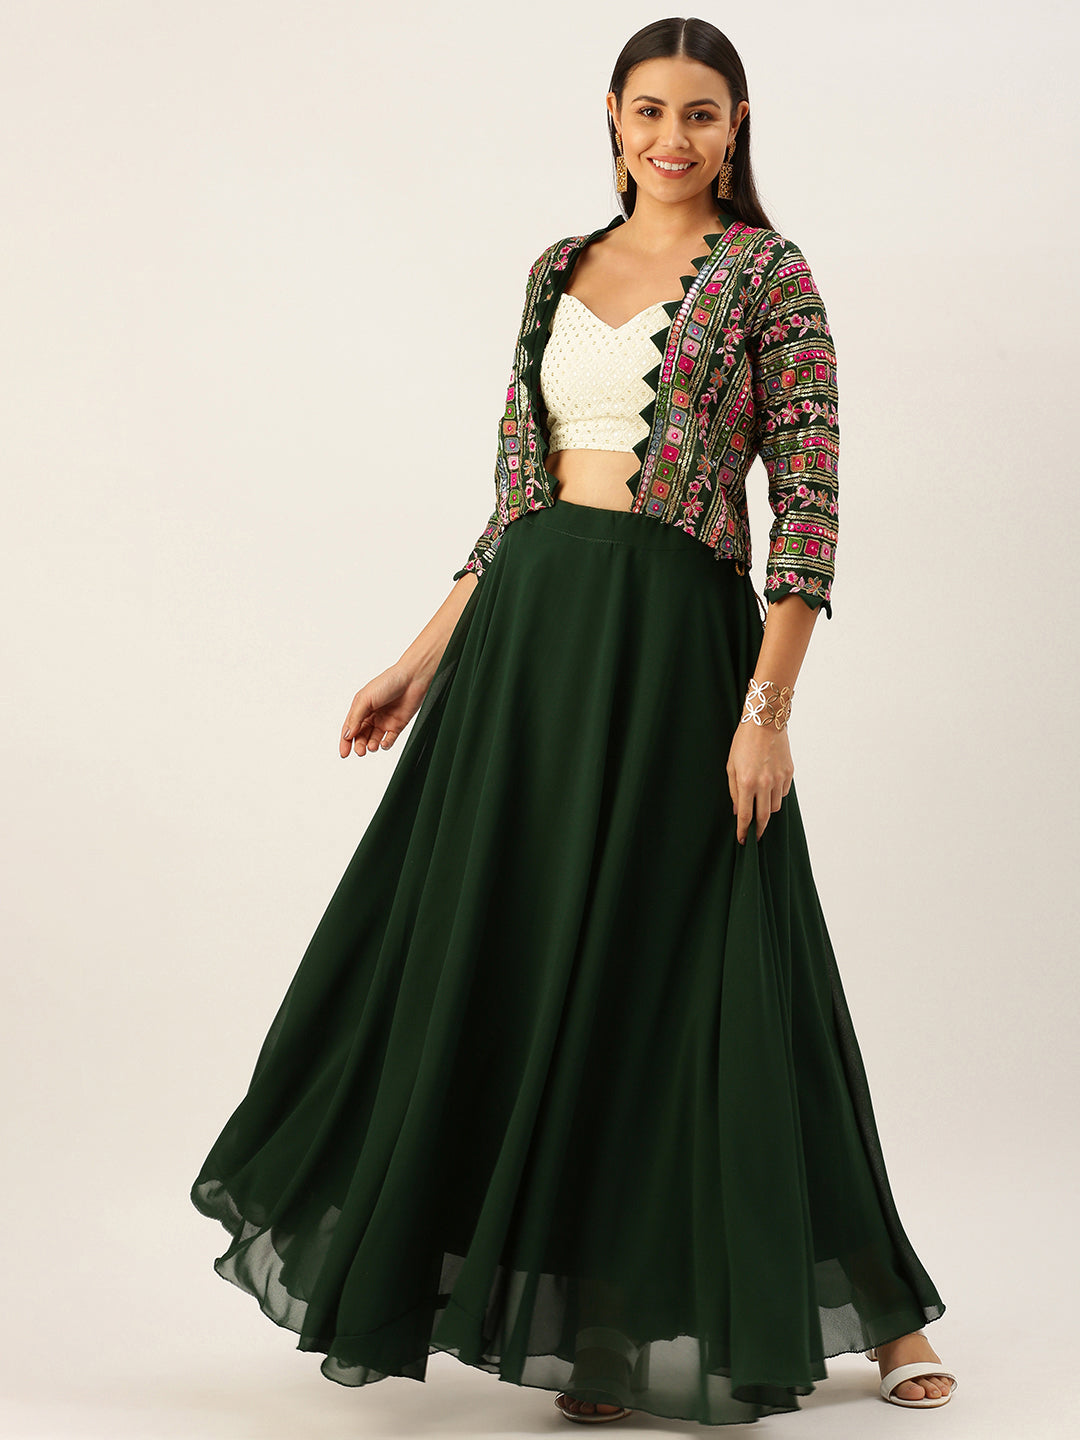 27 + Stunning Jacket Style Lehenga Ideas For A Winter Wedding | Indian  outfits lehenga, Lehenga, Olive clothing